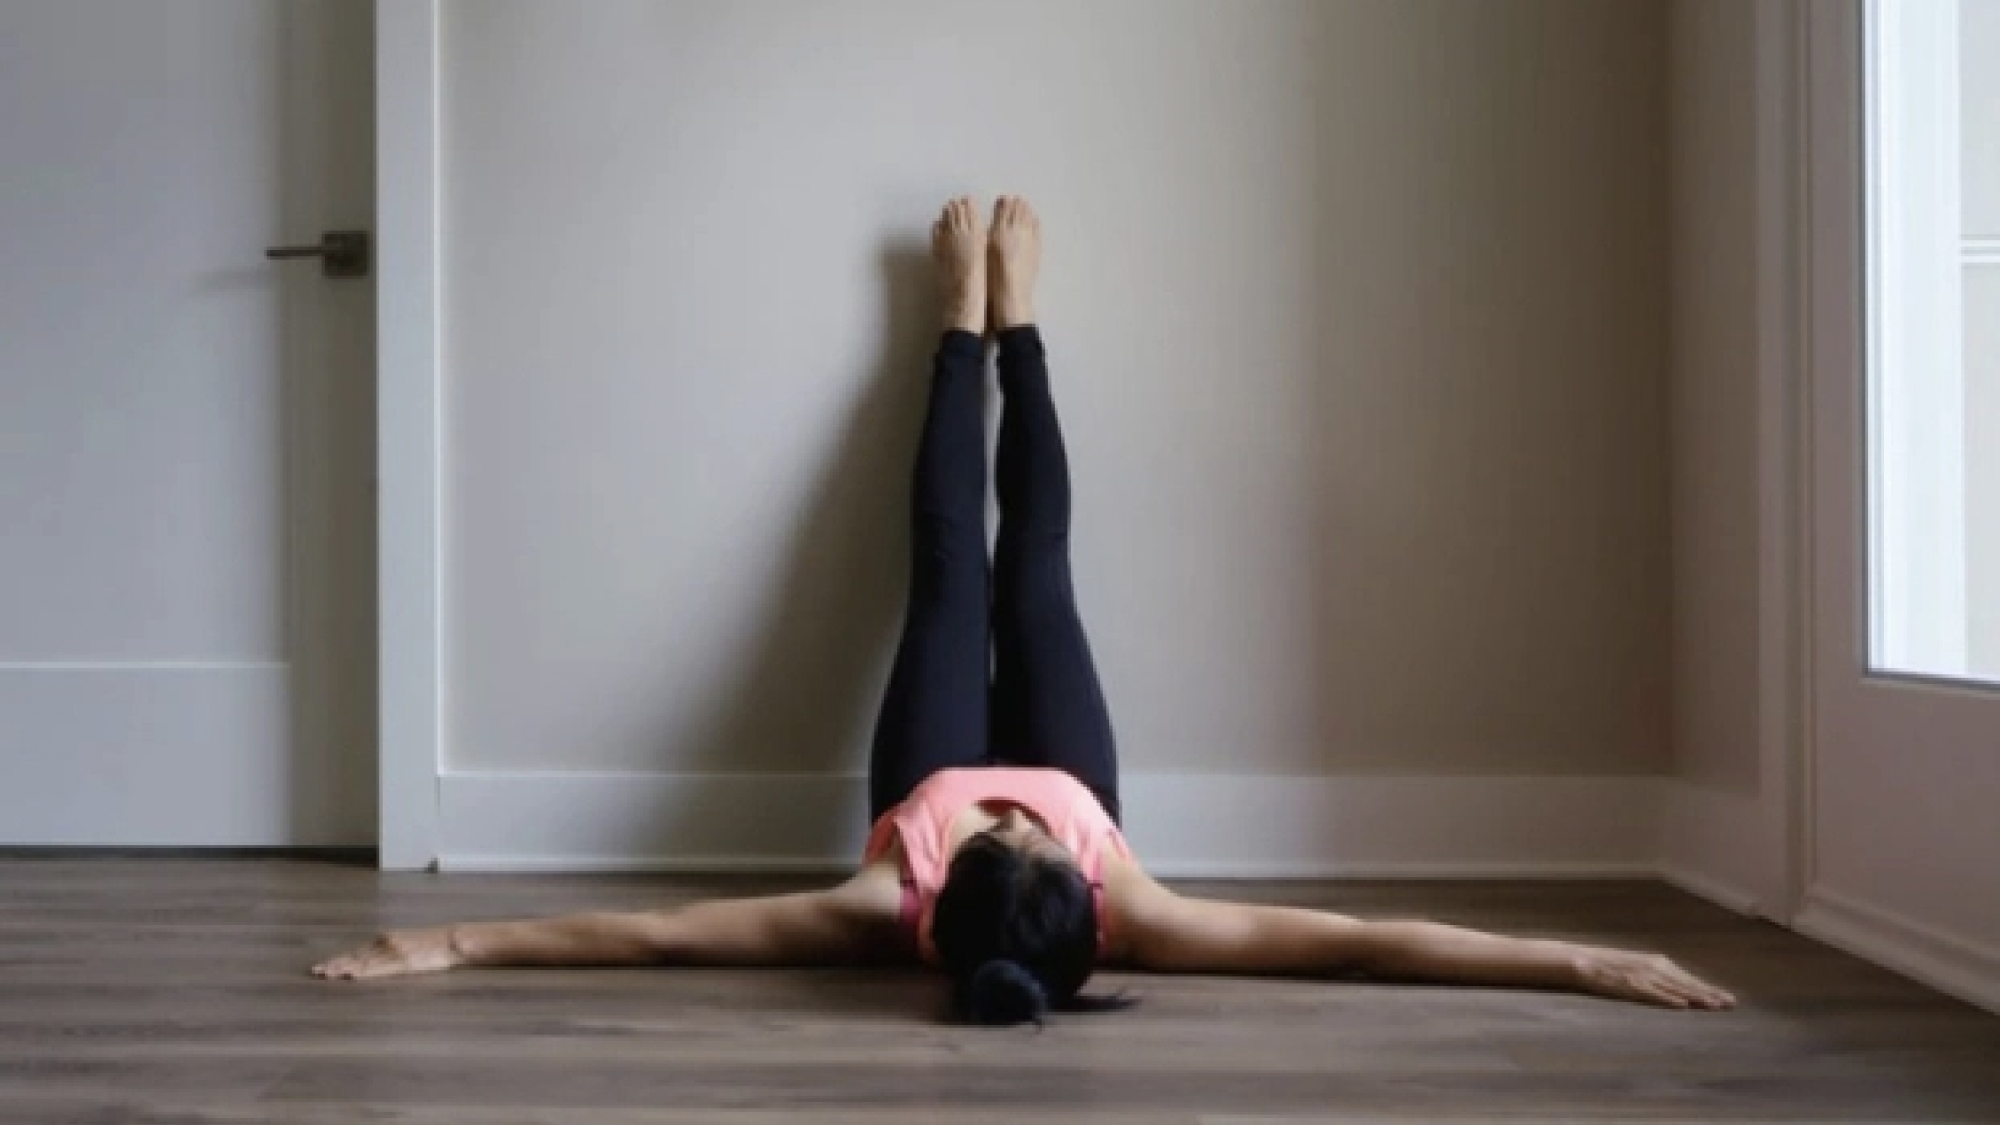 Chữa lành cơ thể: 5 tư thế yoga đơn giản rất tốt cho chị em phụ nữ - Ảnh 3